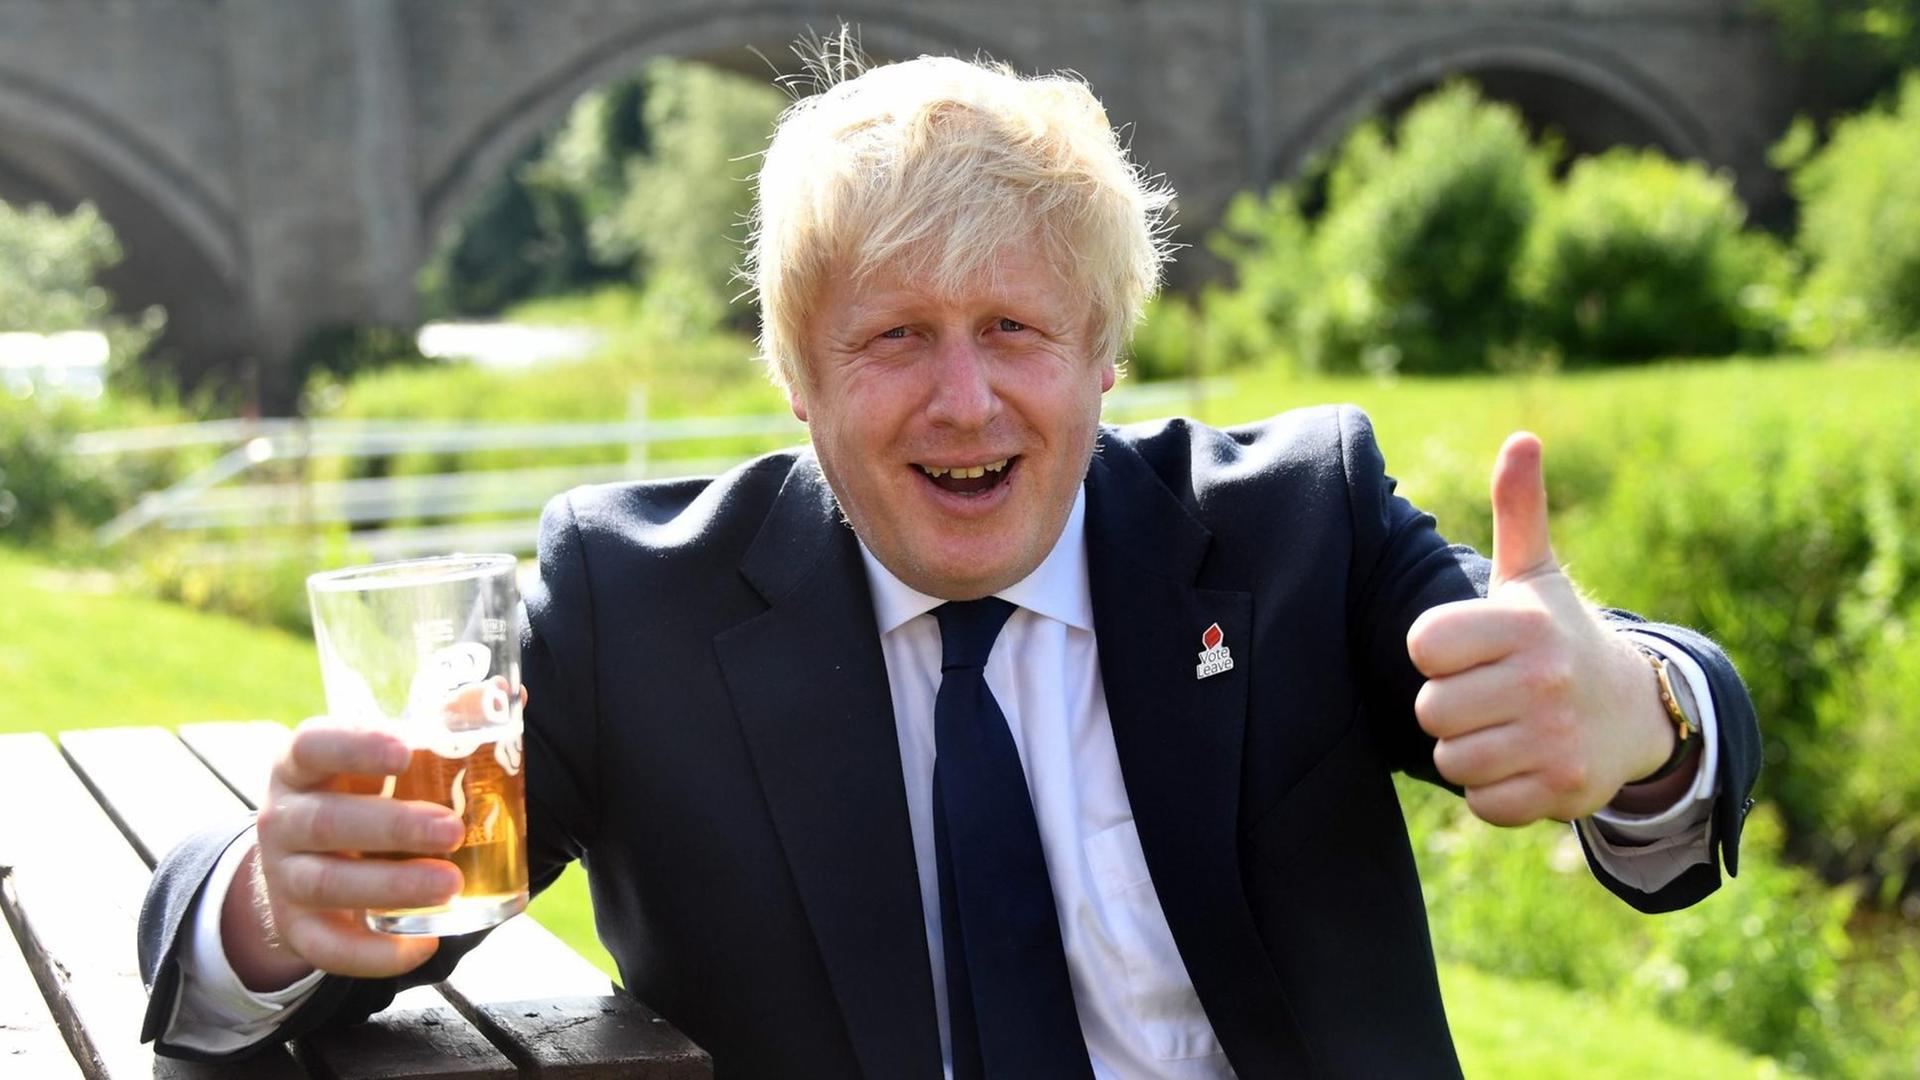 Der ehemalige Bürgermeister von London, Boris Johnson, sitzt während eines Auftritts für den EU-Austritt auf einer Bank. In einer Hand hält er ein Bier, bei der anderen Hand zeigt der Daumen nach oben.